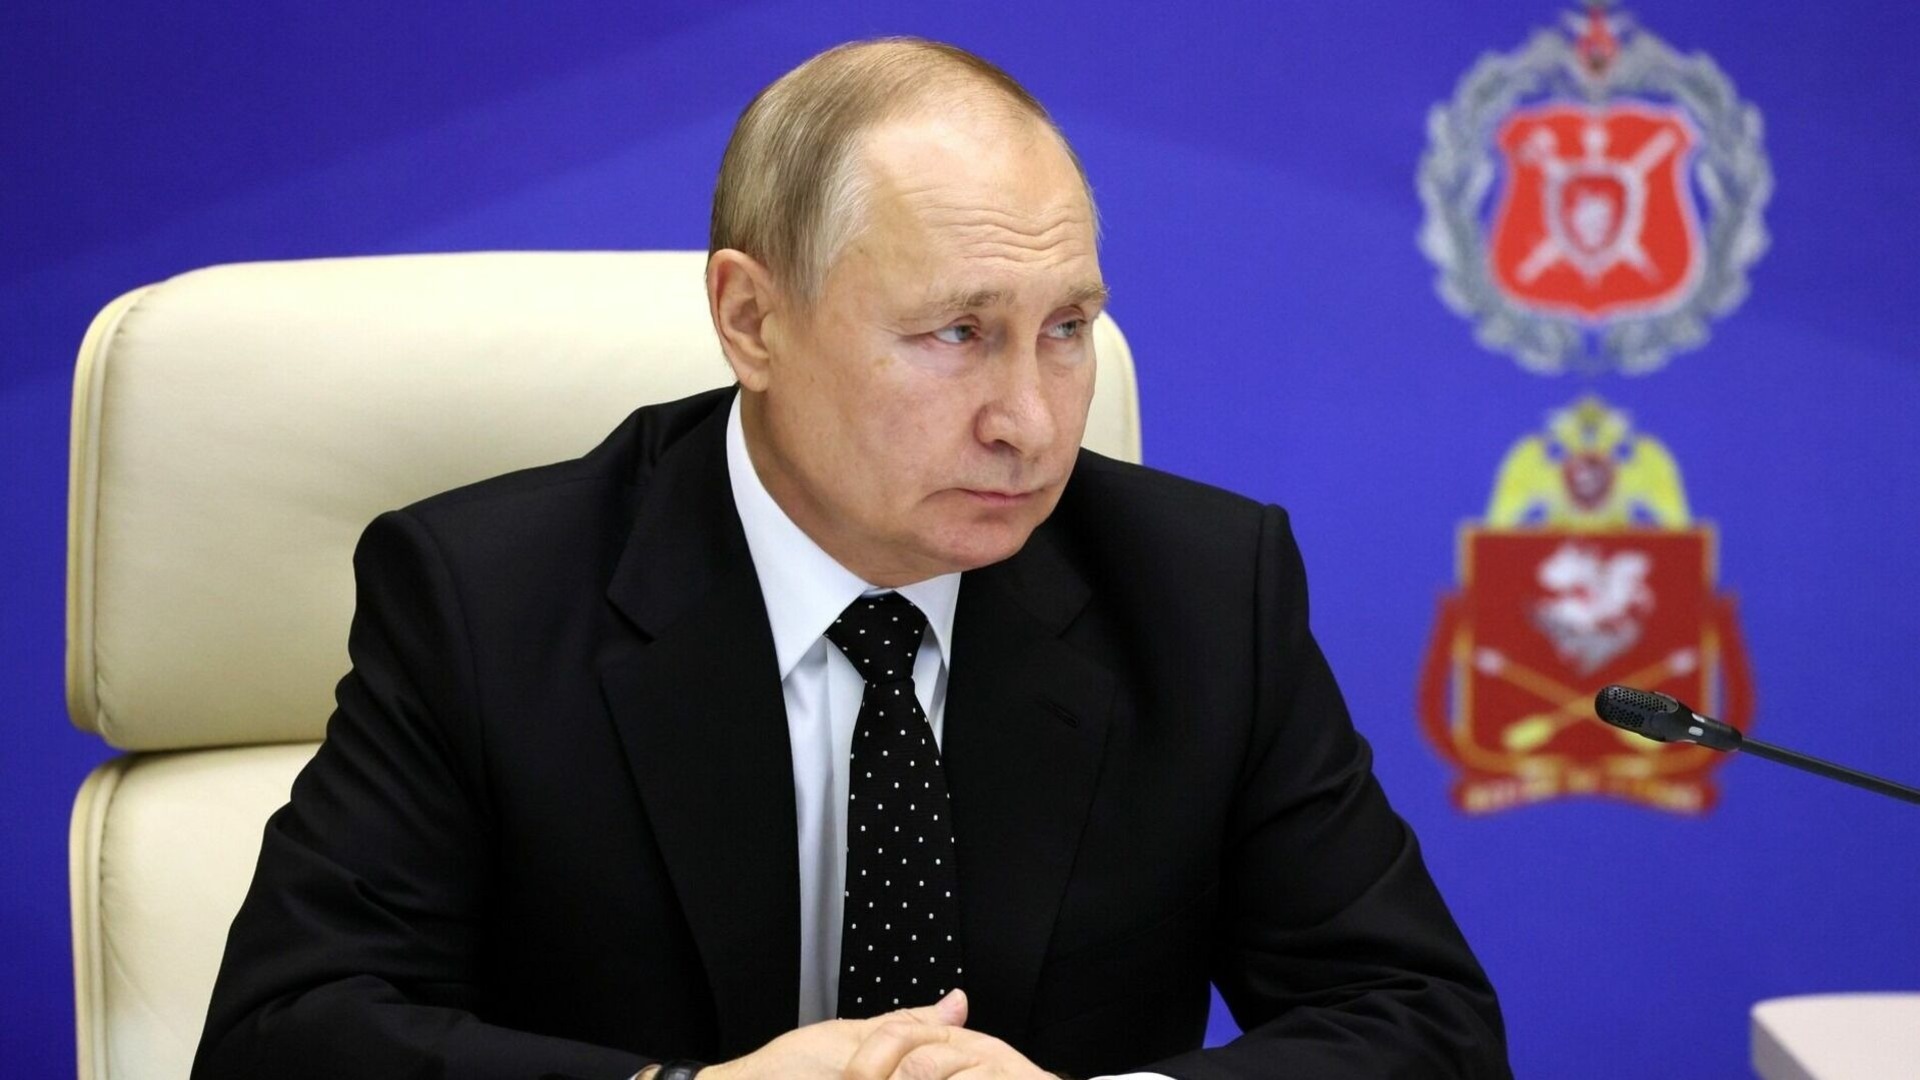 Владимир Путин в присутствии девочки выделил Дагестану 5 млрд рублей (ВИДЕО)